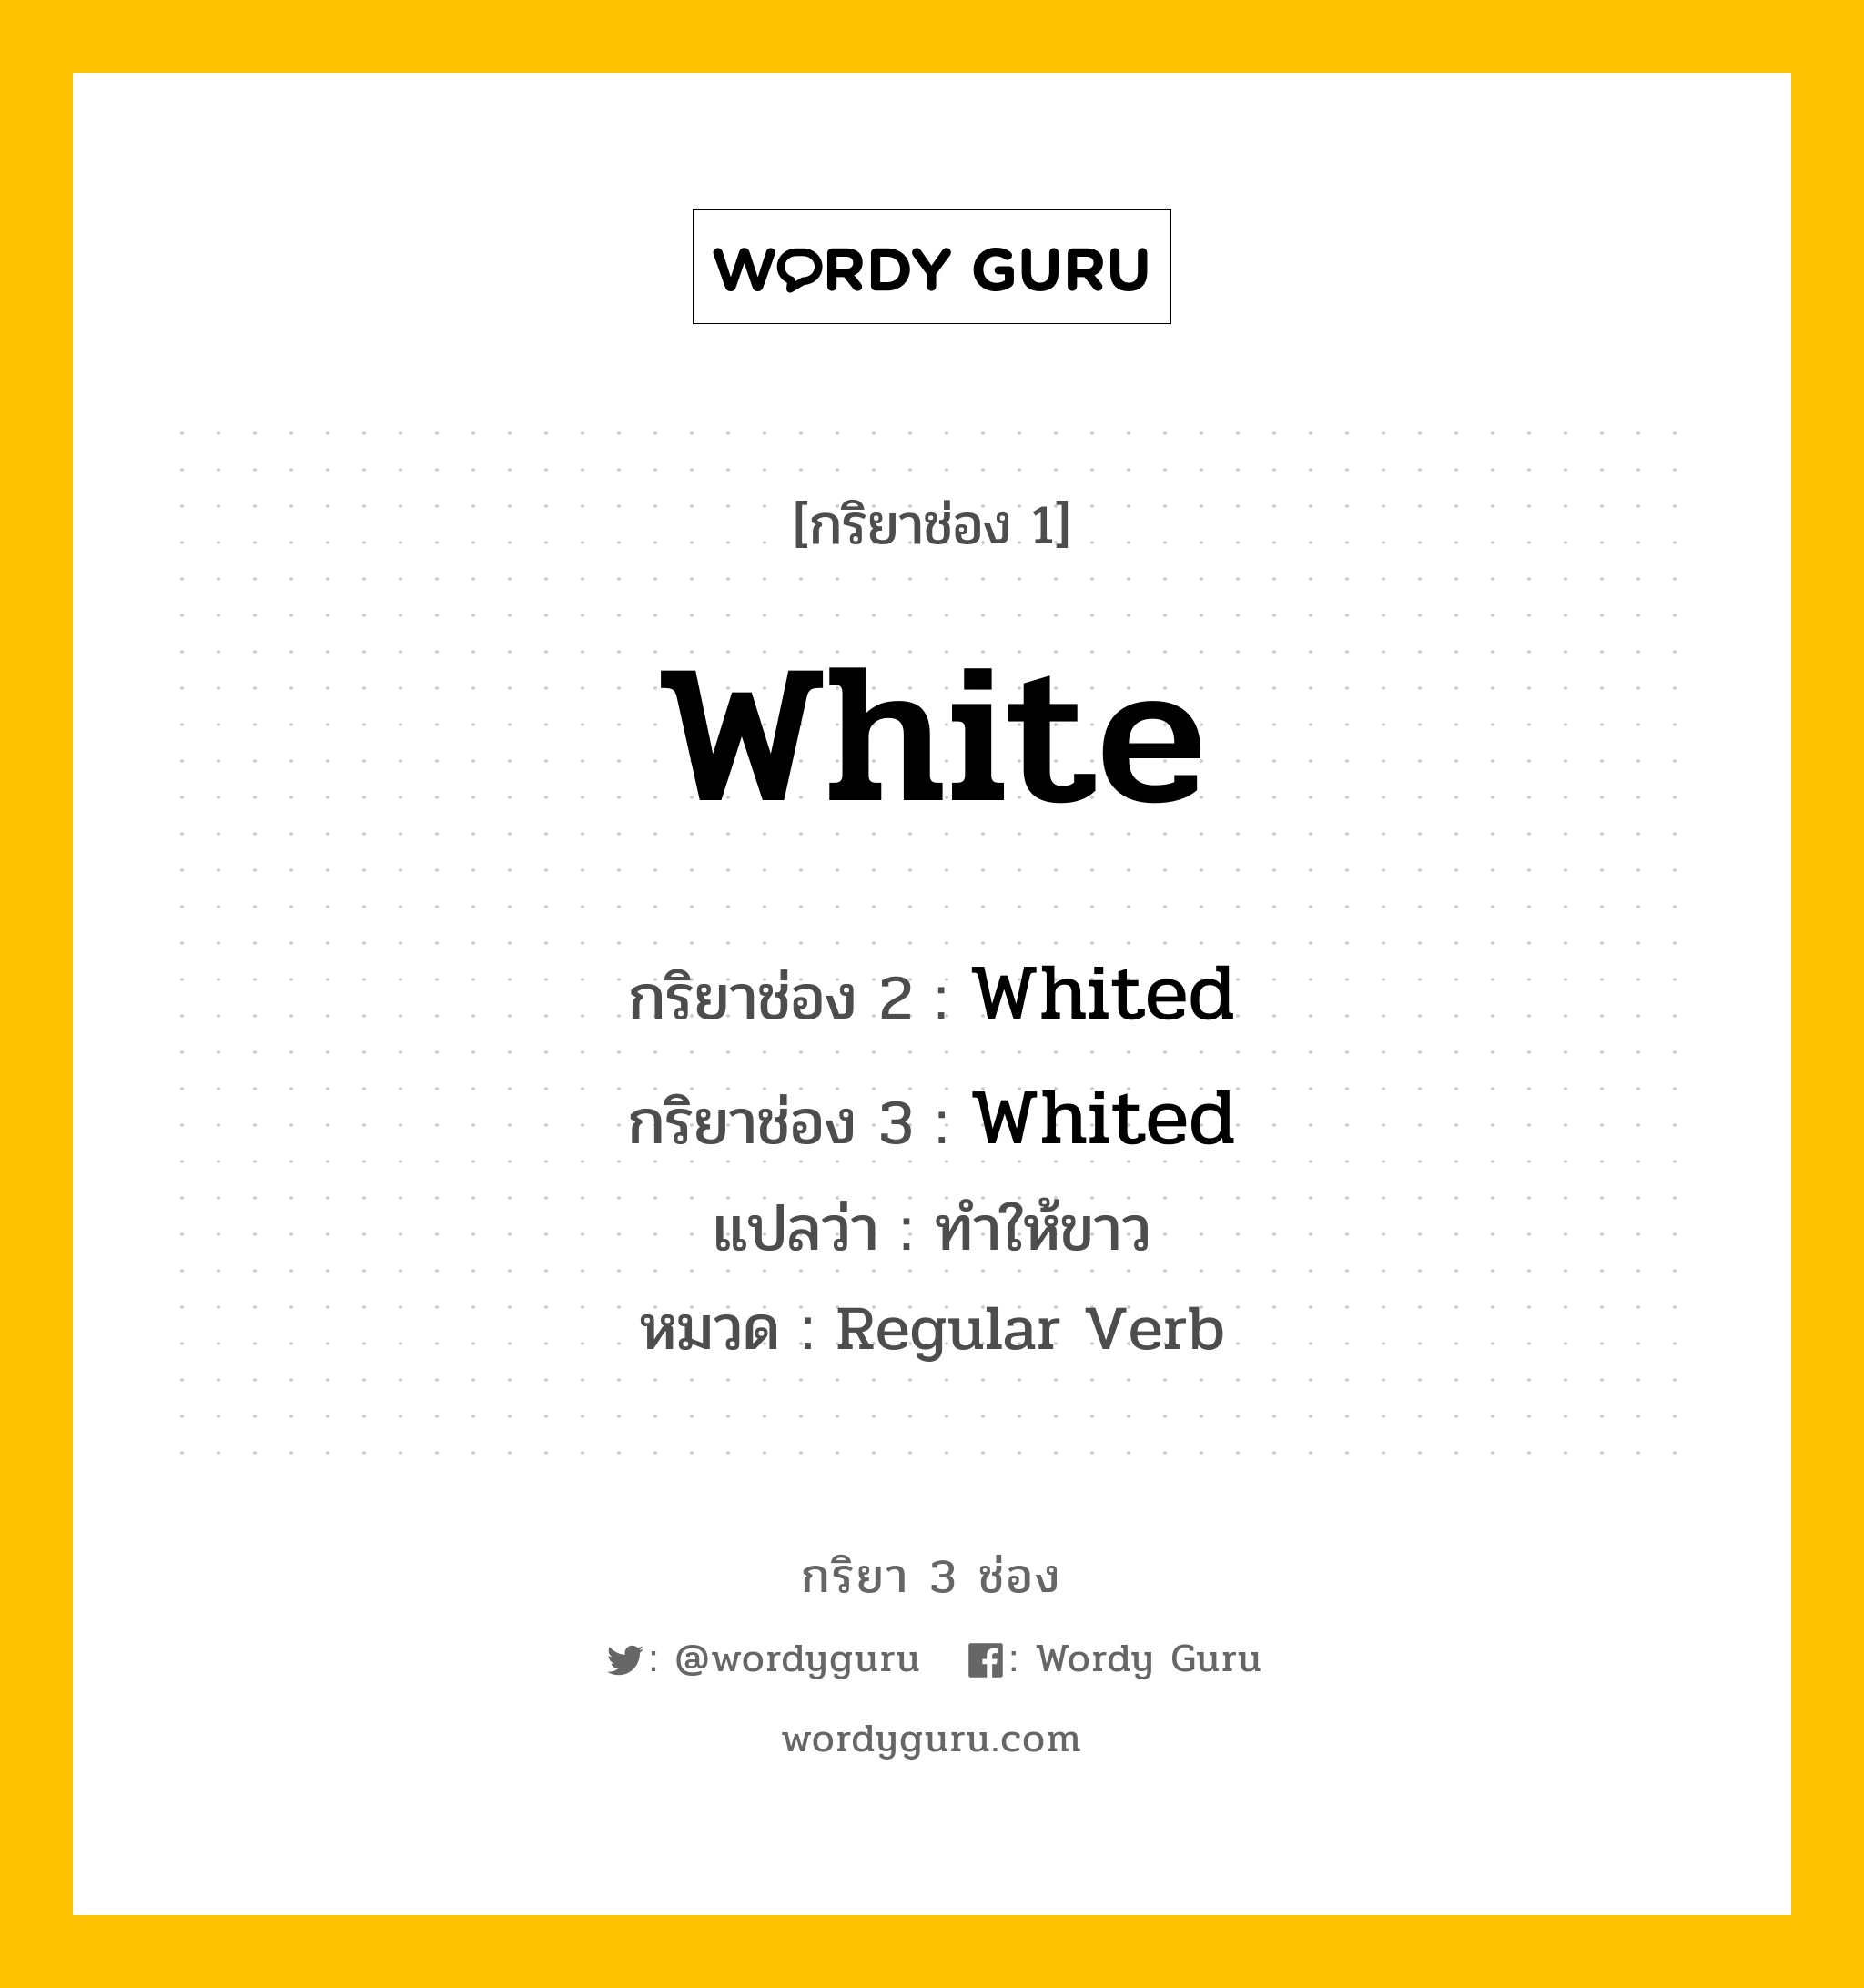 กริยา 3 ช่อง: White ช่อง 2 White ช่อง 3 คืออะไร, กริยาช่อง 1 White กริยาช่อง 2 Whited กริยาช่อง 3 Whited แปลว่า ทำให้ขาว หมวด Regular Verb หมวด Regular Verb